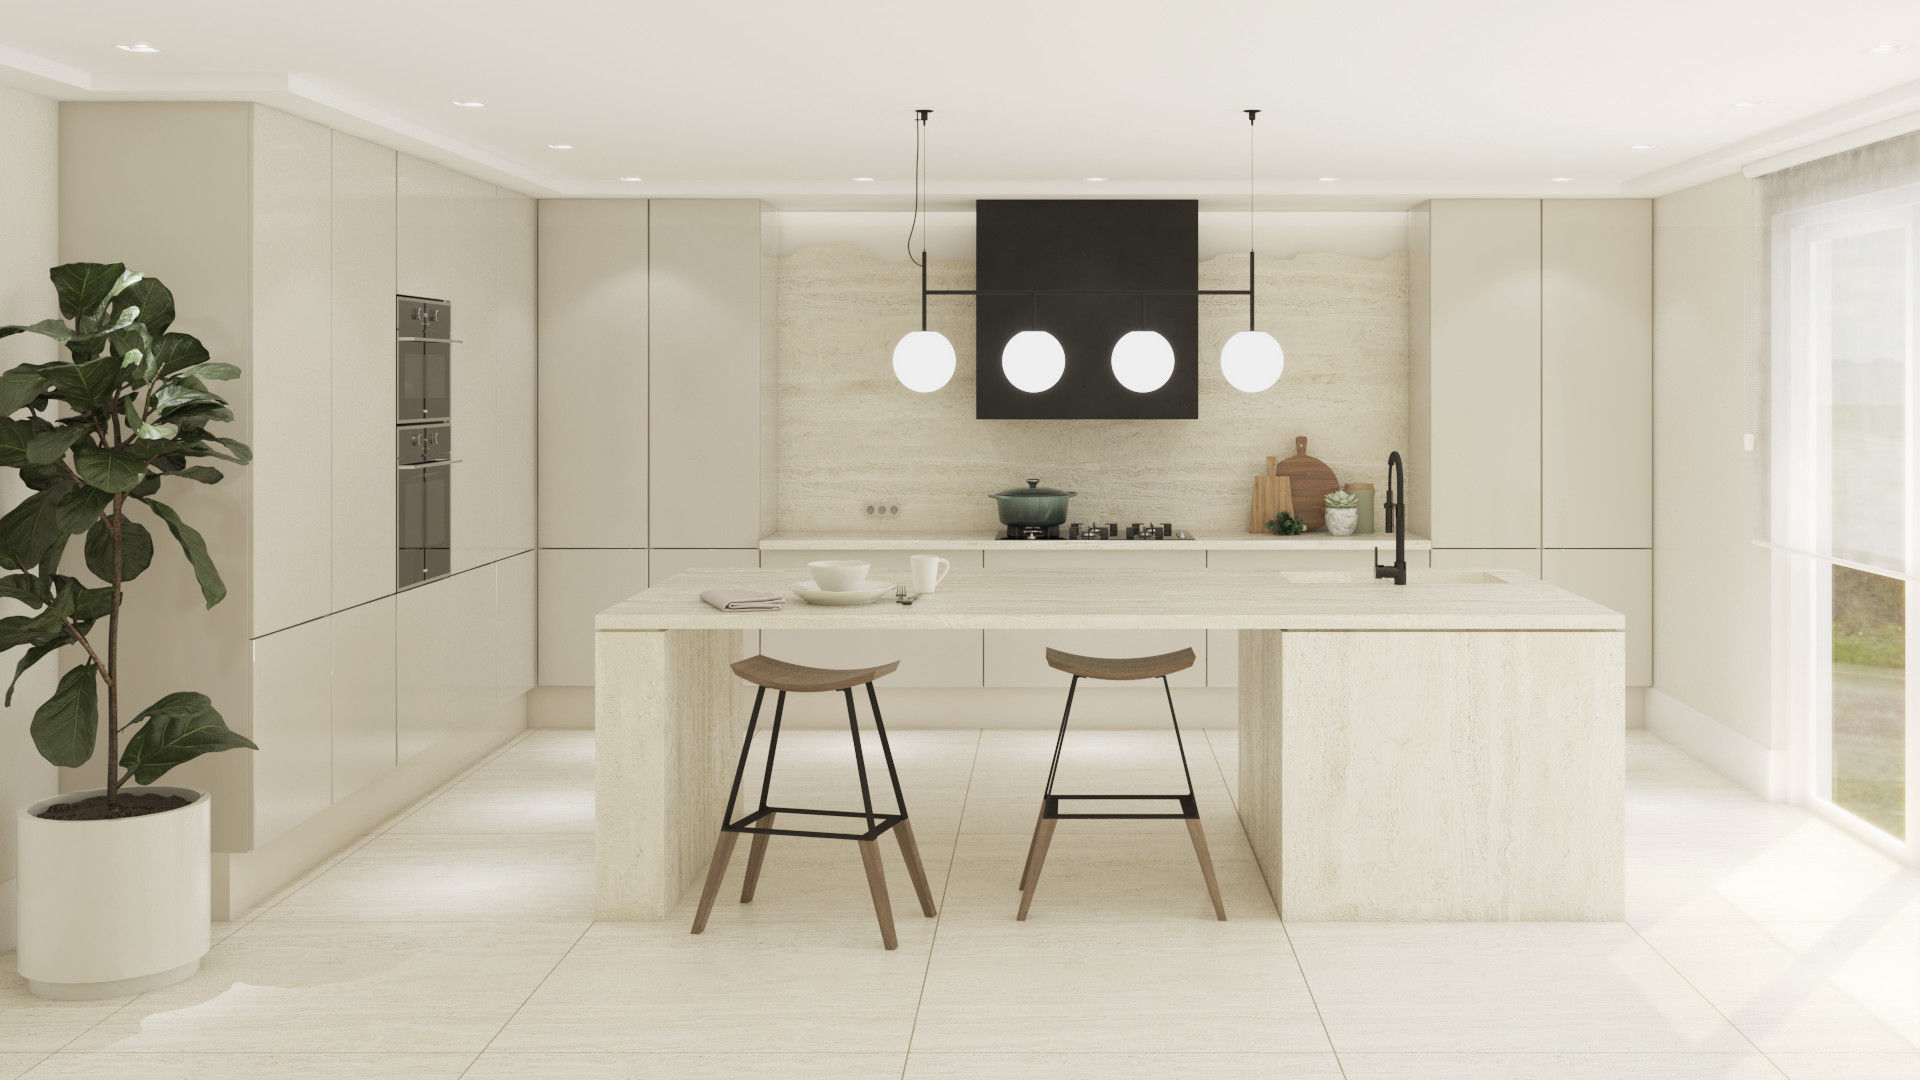 Cozinha NURE Interiores Cozinhas modernas Luxo, cores neutras,requinte,preto,bege,mármore,conforto,moderno,clean,cozinha